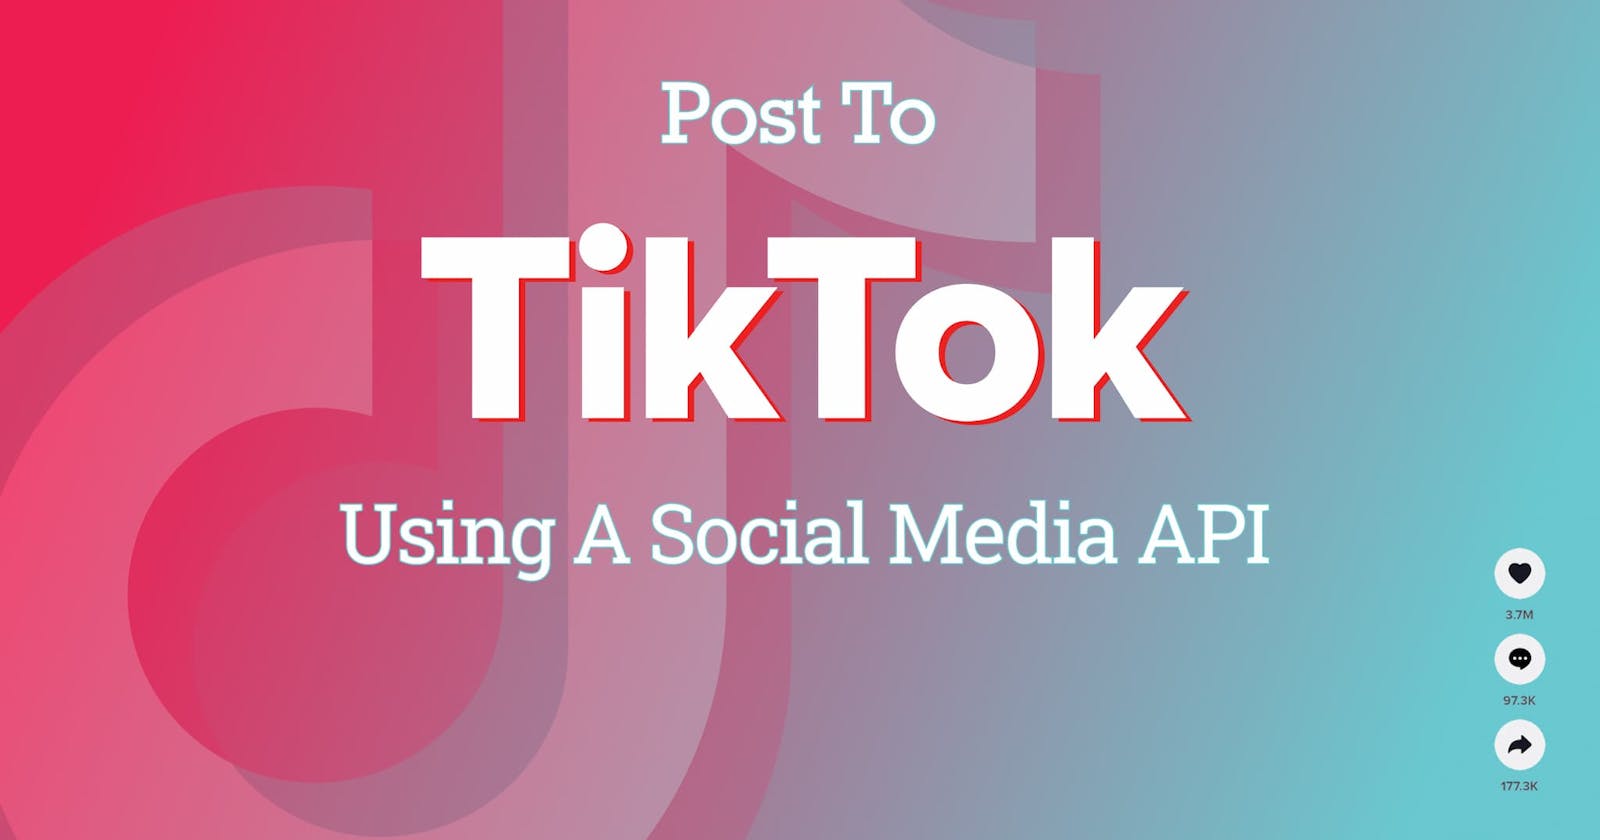 TikTok API: How to Post to TikTok Using a Social Media API